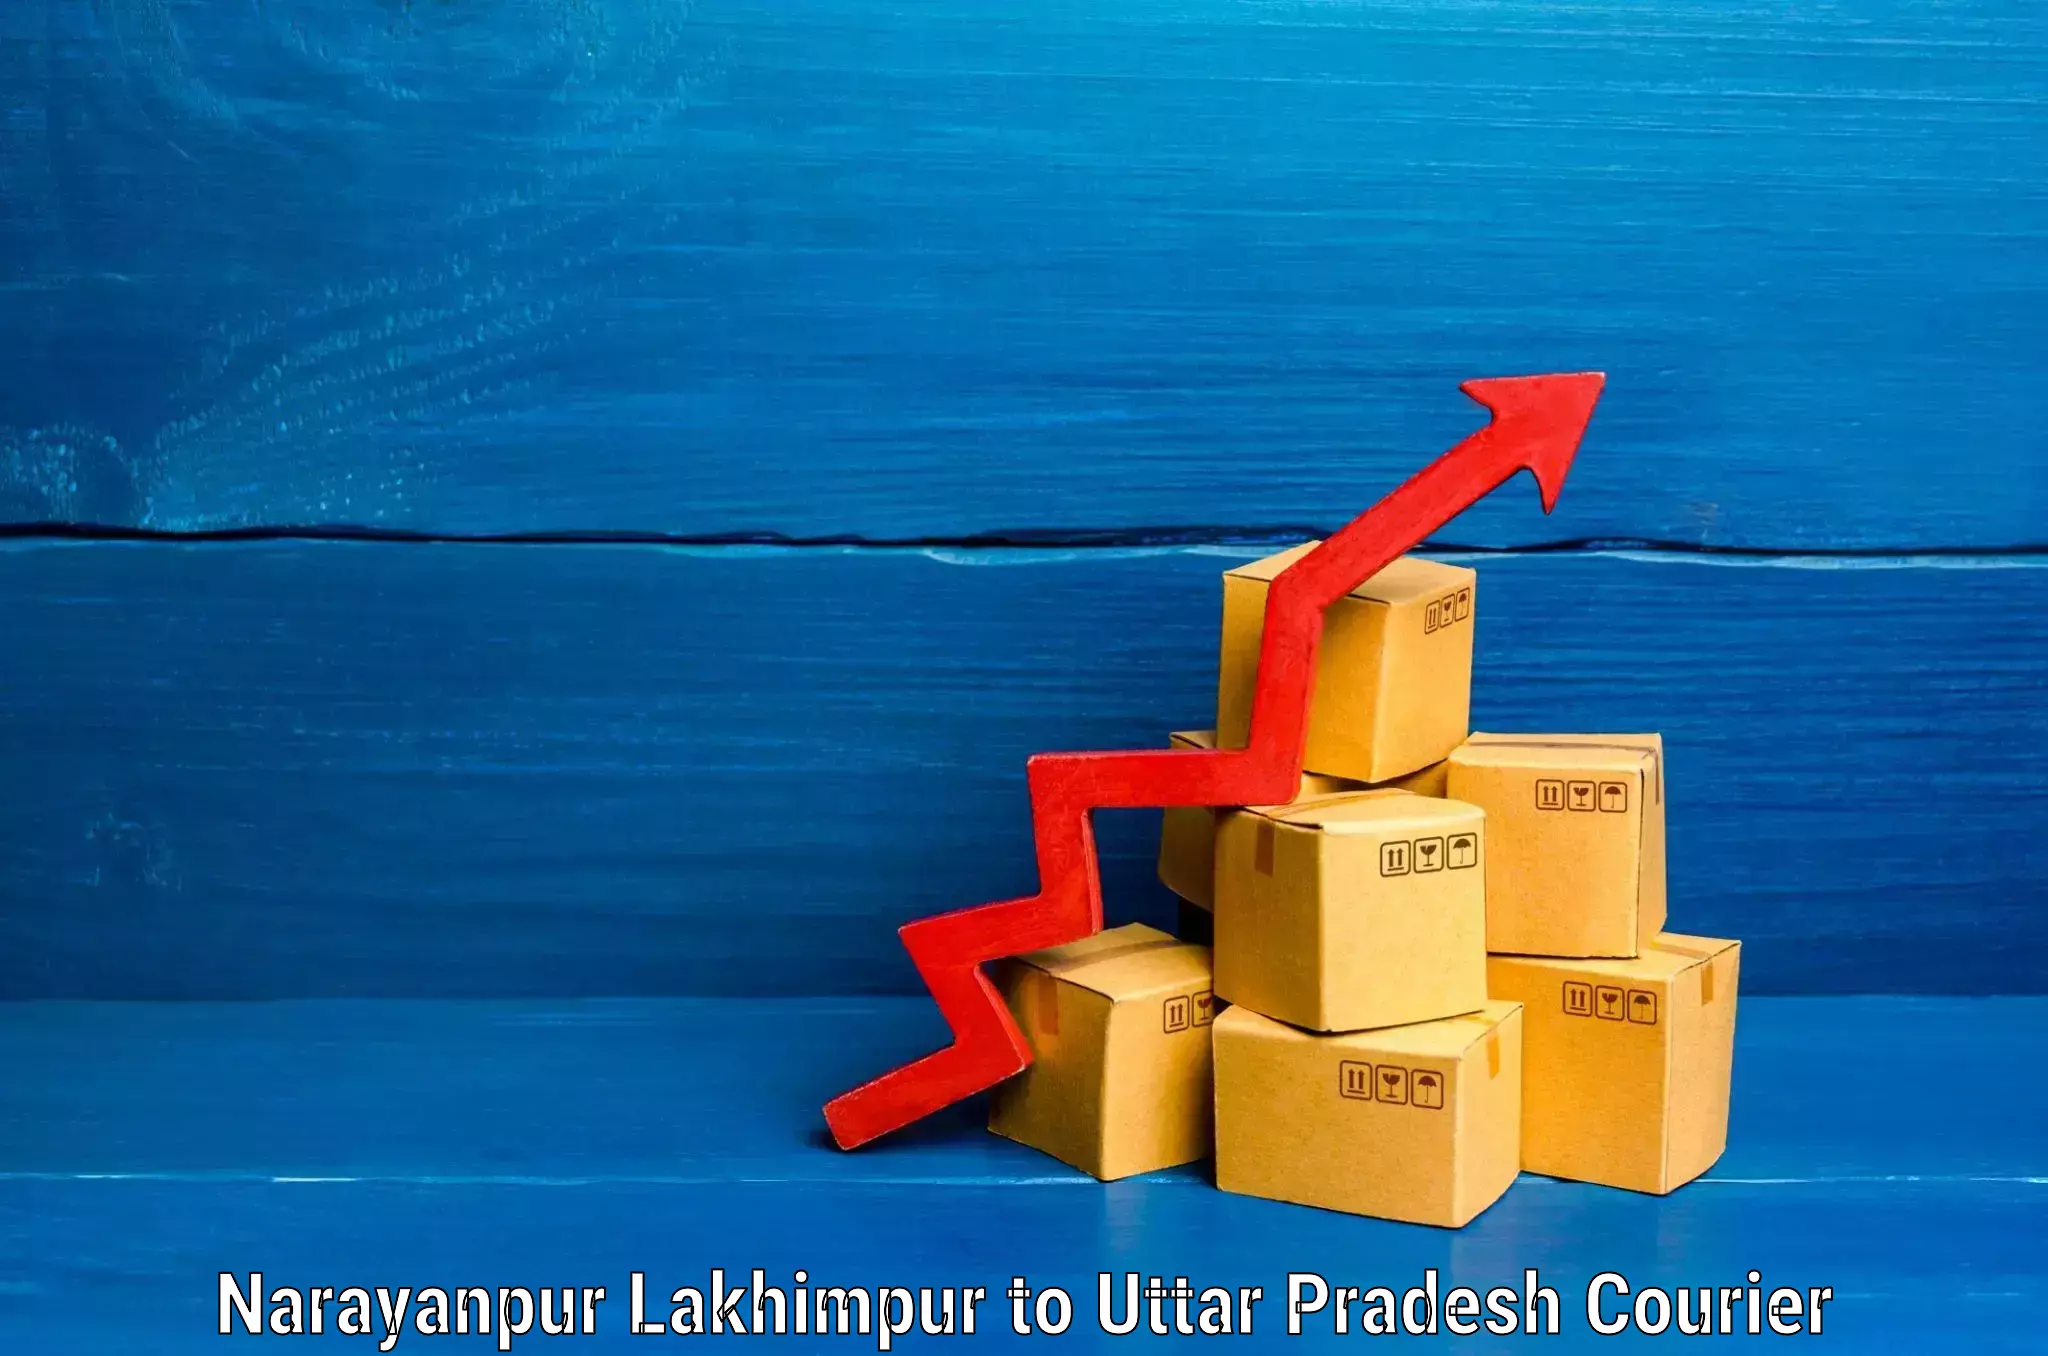 Urgent luggage shipment Narayanpur Lakhimpur to Uttar Pradesh